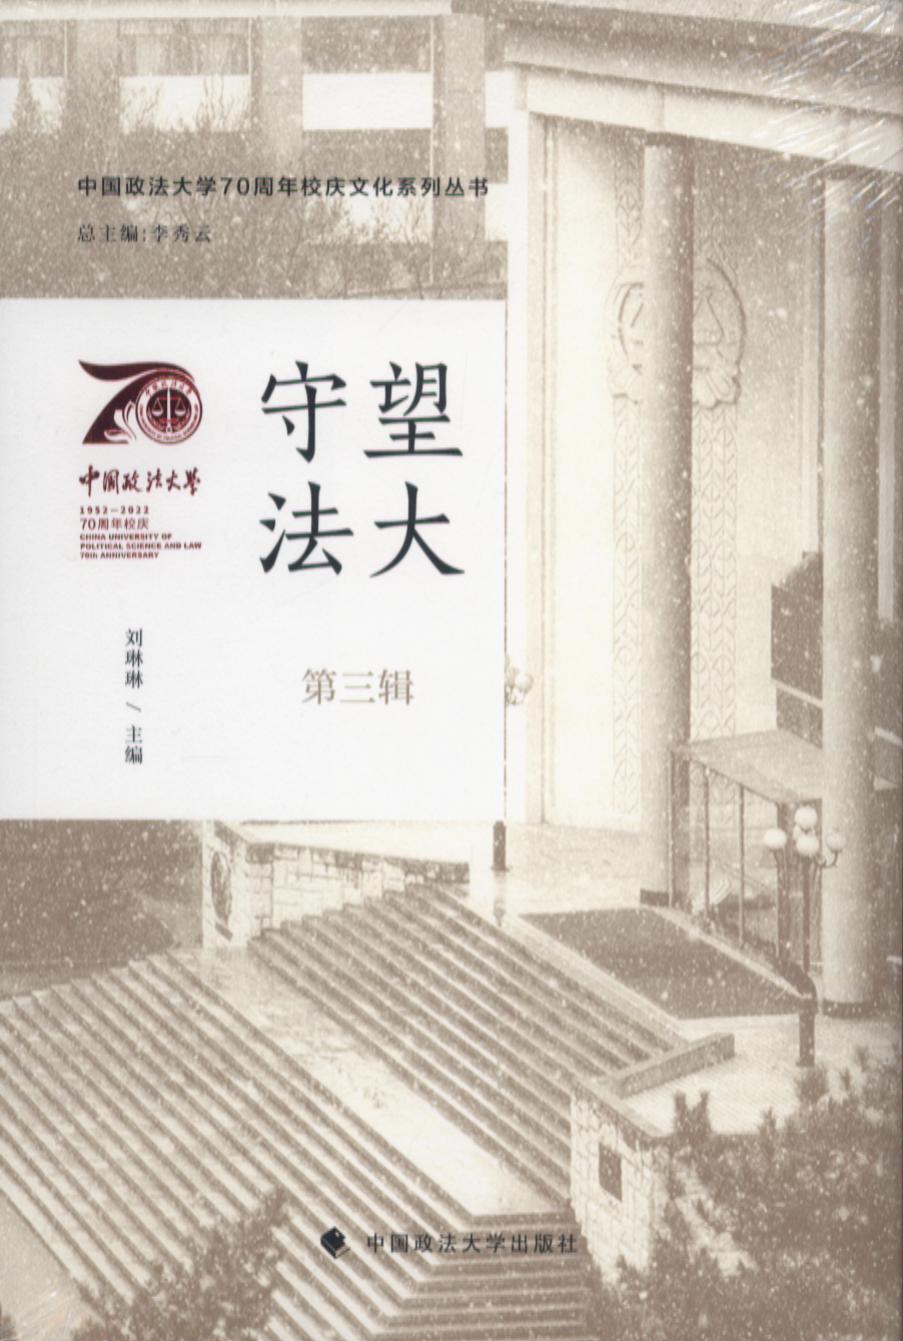 守望法大（第三辑）/中国政法大学70周年校庆文化系列丛书